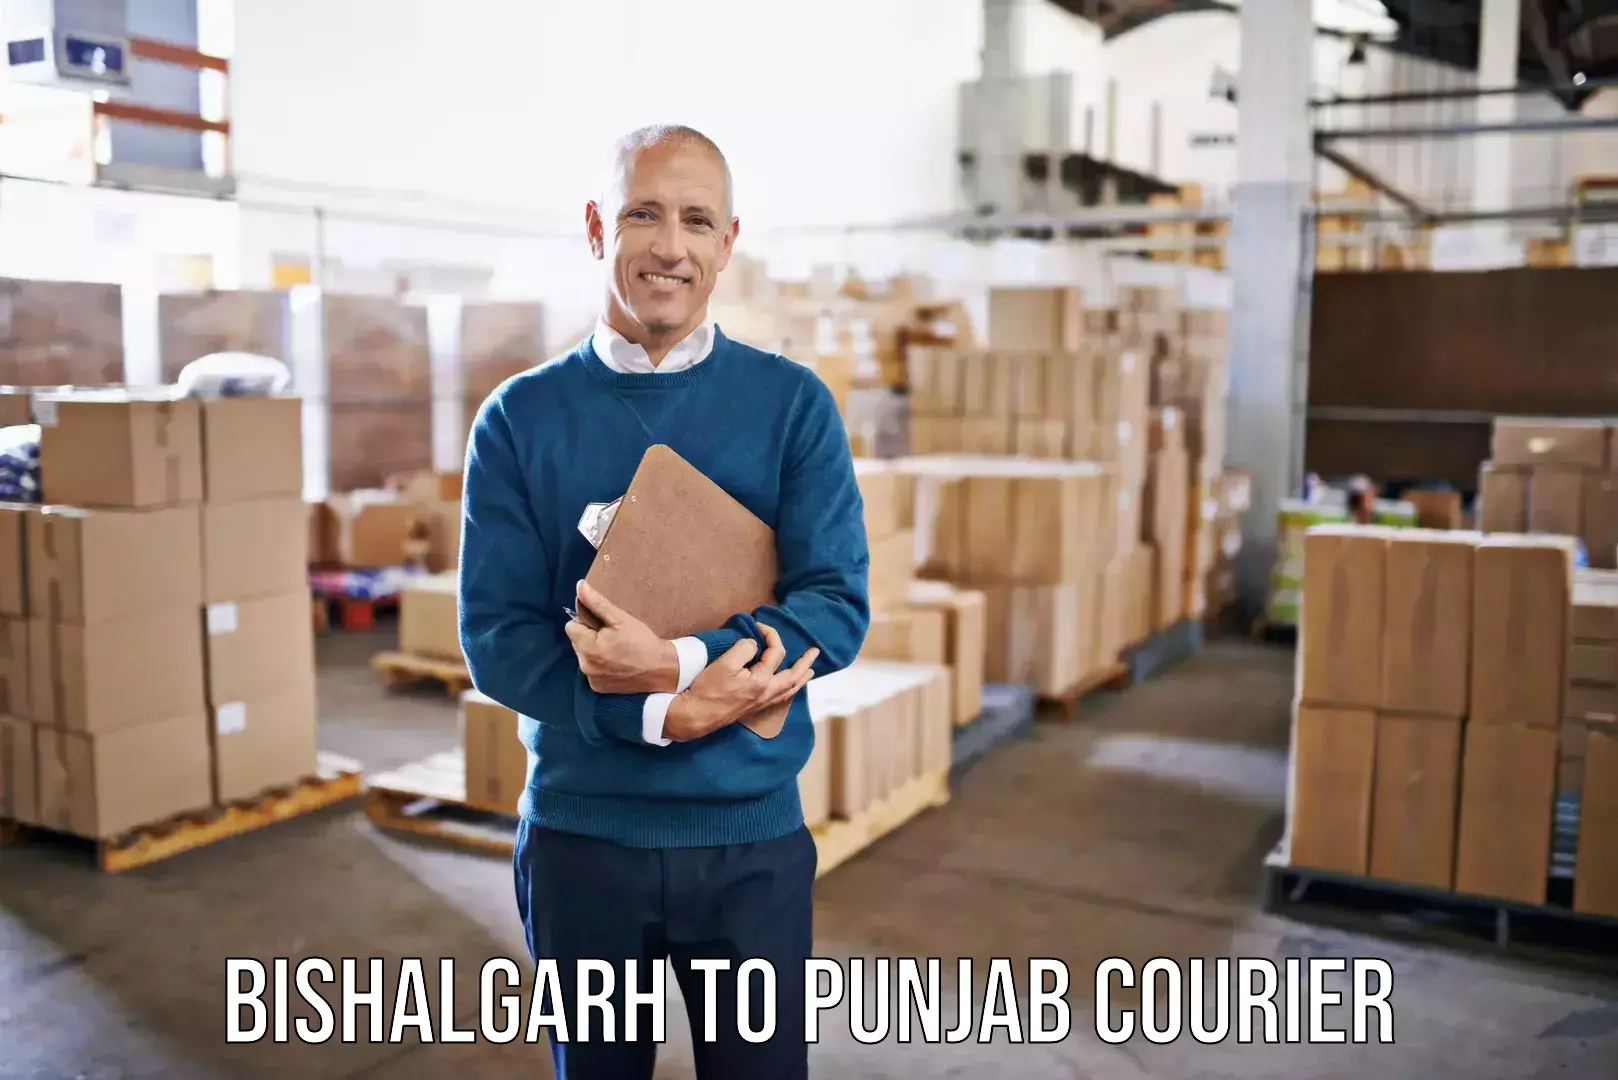 Professional furniture movers Bishalgarh to Punjab